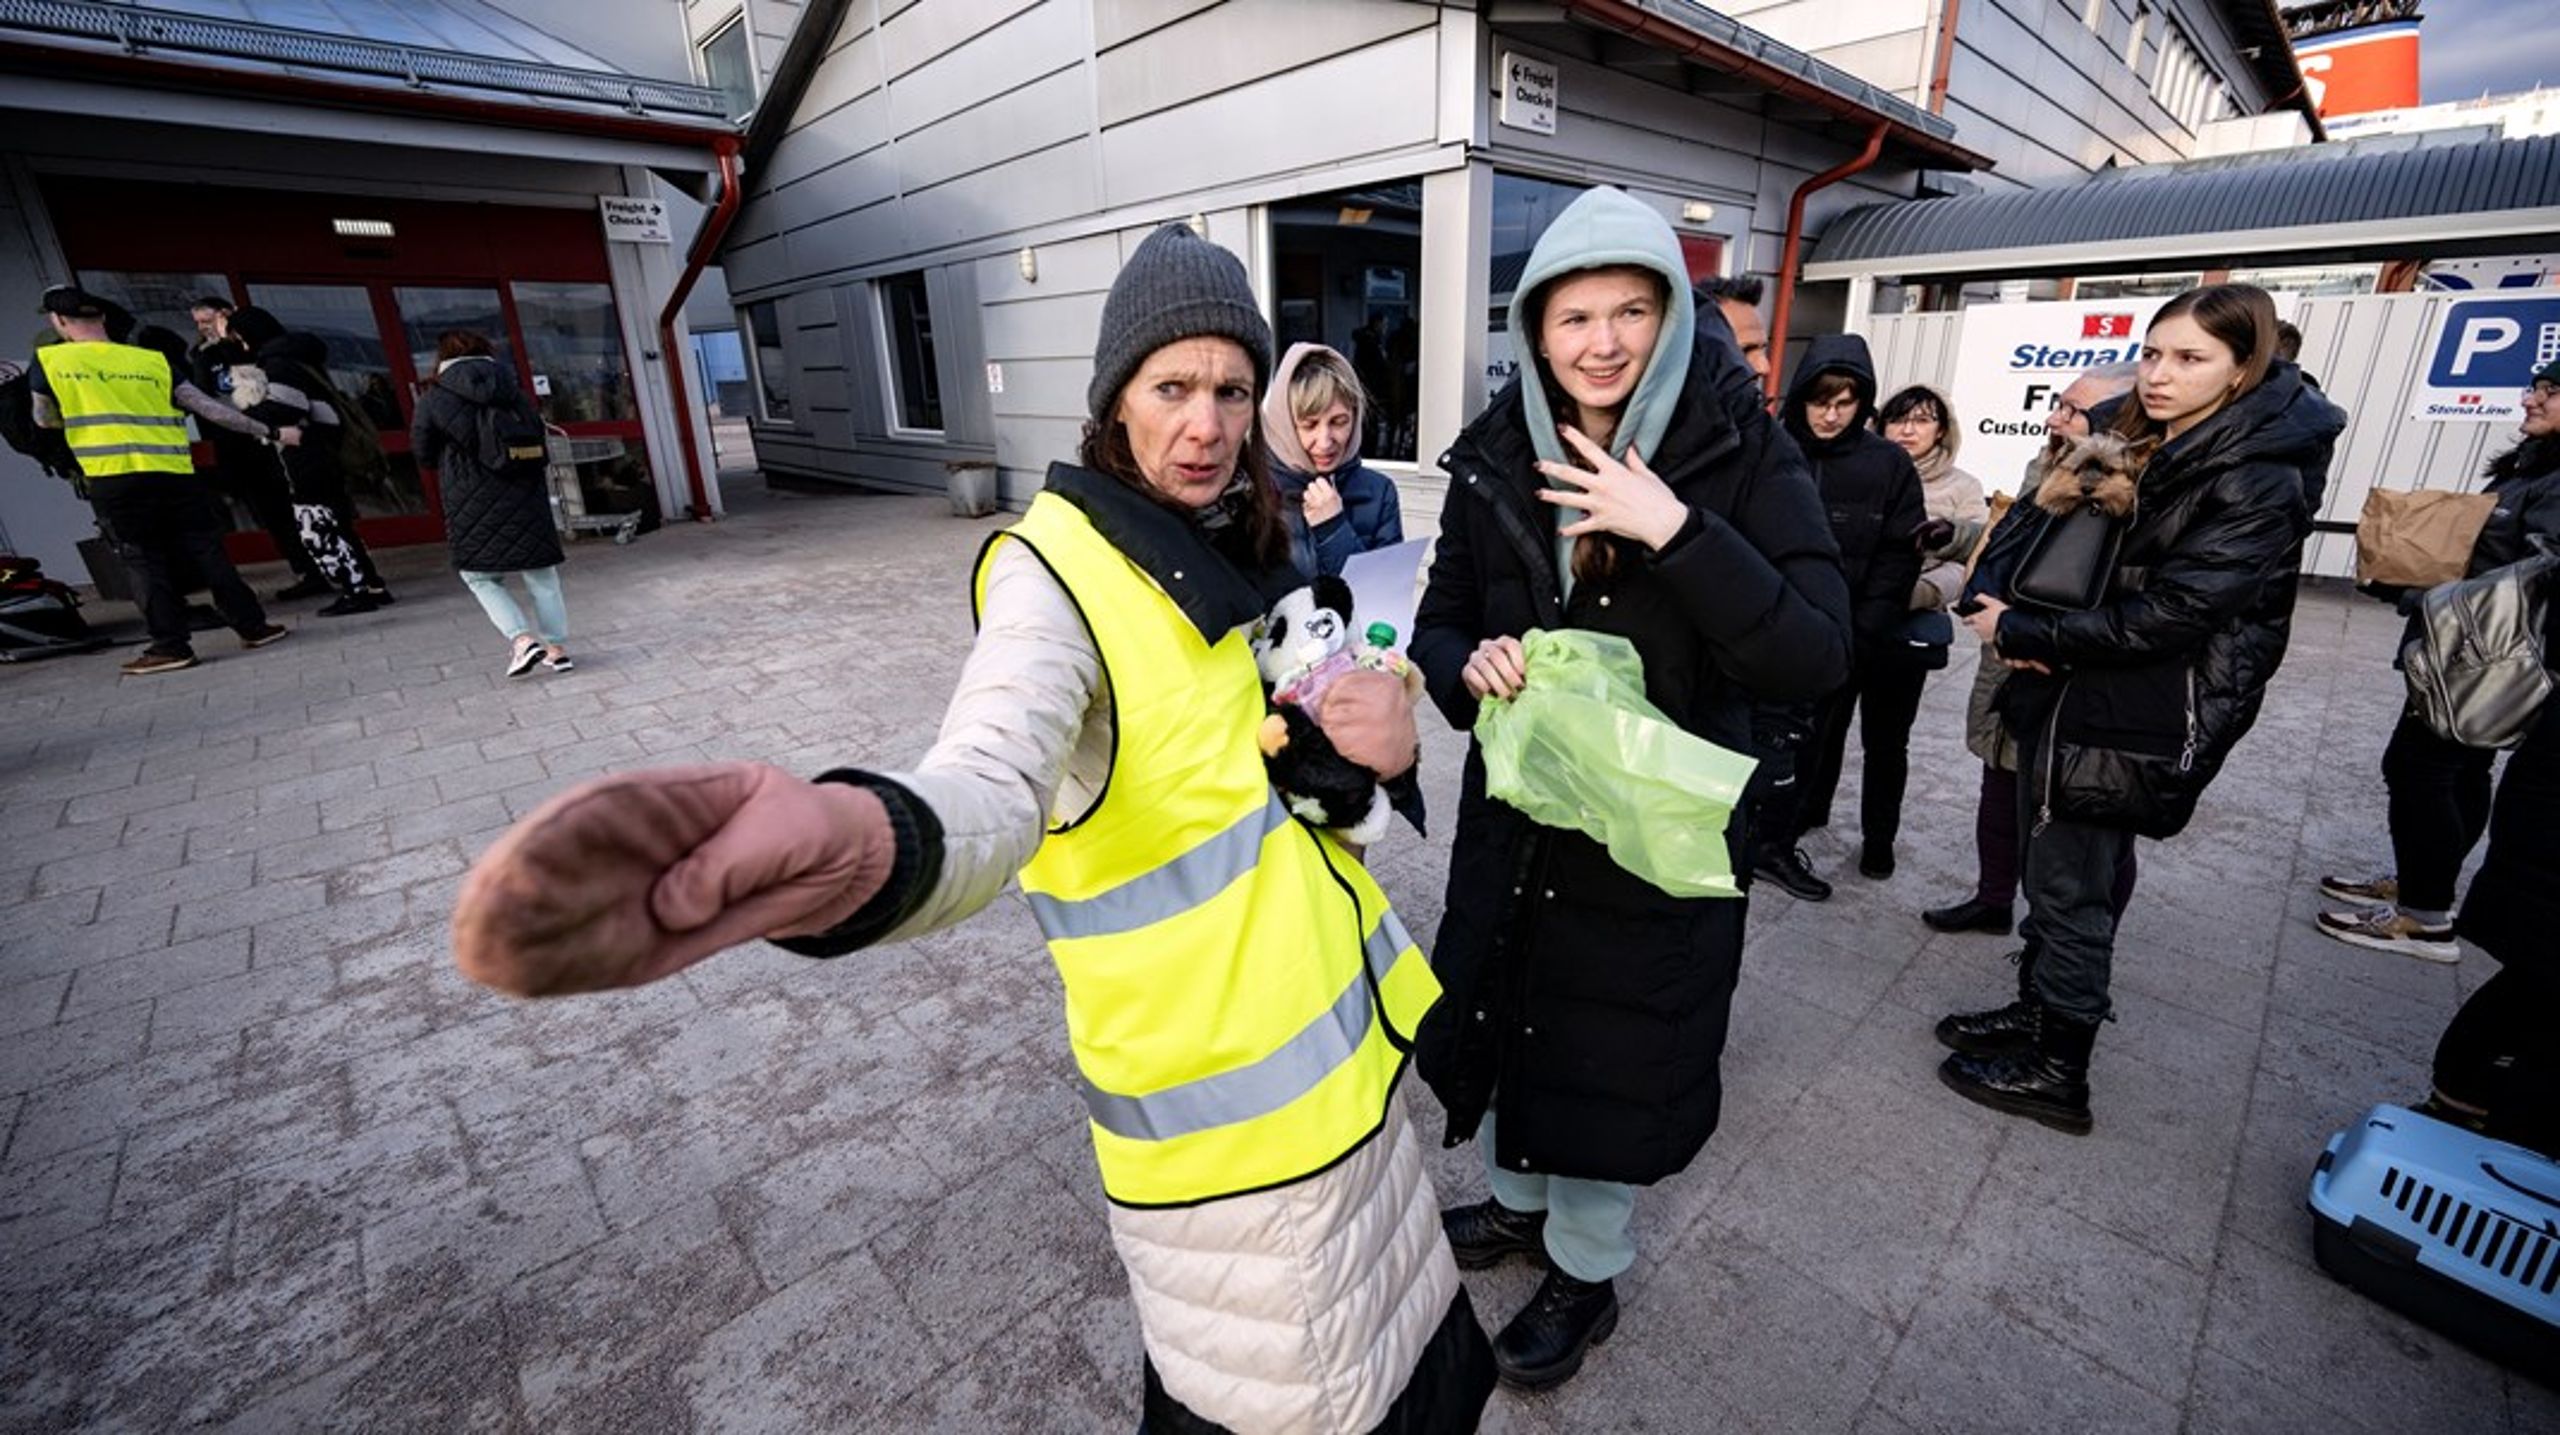 När ukrainska flyktingar anlände med färjan från Gdynia till Karlskrona i mars, så var volontären Anki Johansson (bilden) en av dem som tog emot. Ett exempel på hur civilsamhället mobiliserar i kris. Men utan en fungerande infrastruktur på plats blir det svårare att hjälpa, menar Ulrika Stuart Hamilton på Famna. (Arkivbild)